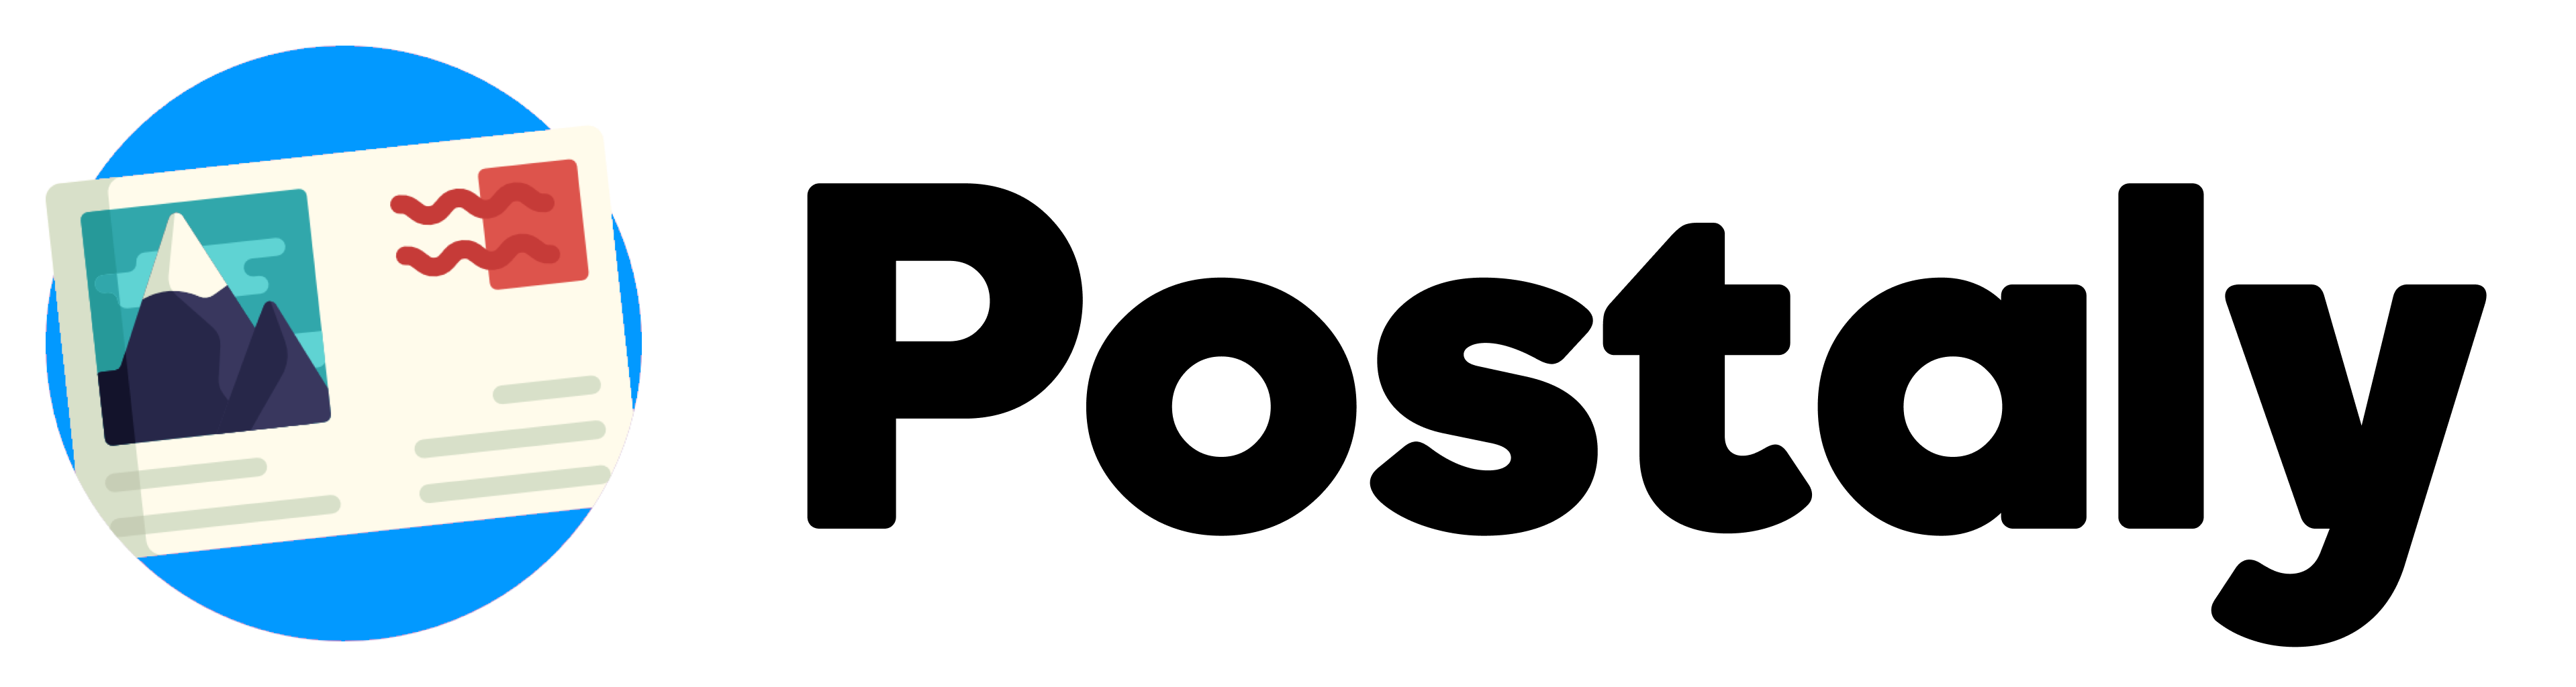 Postaly Logo Black